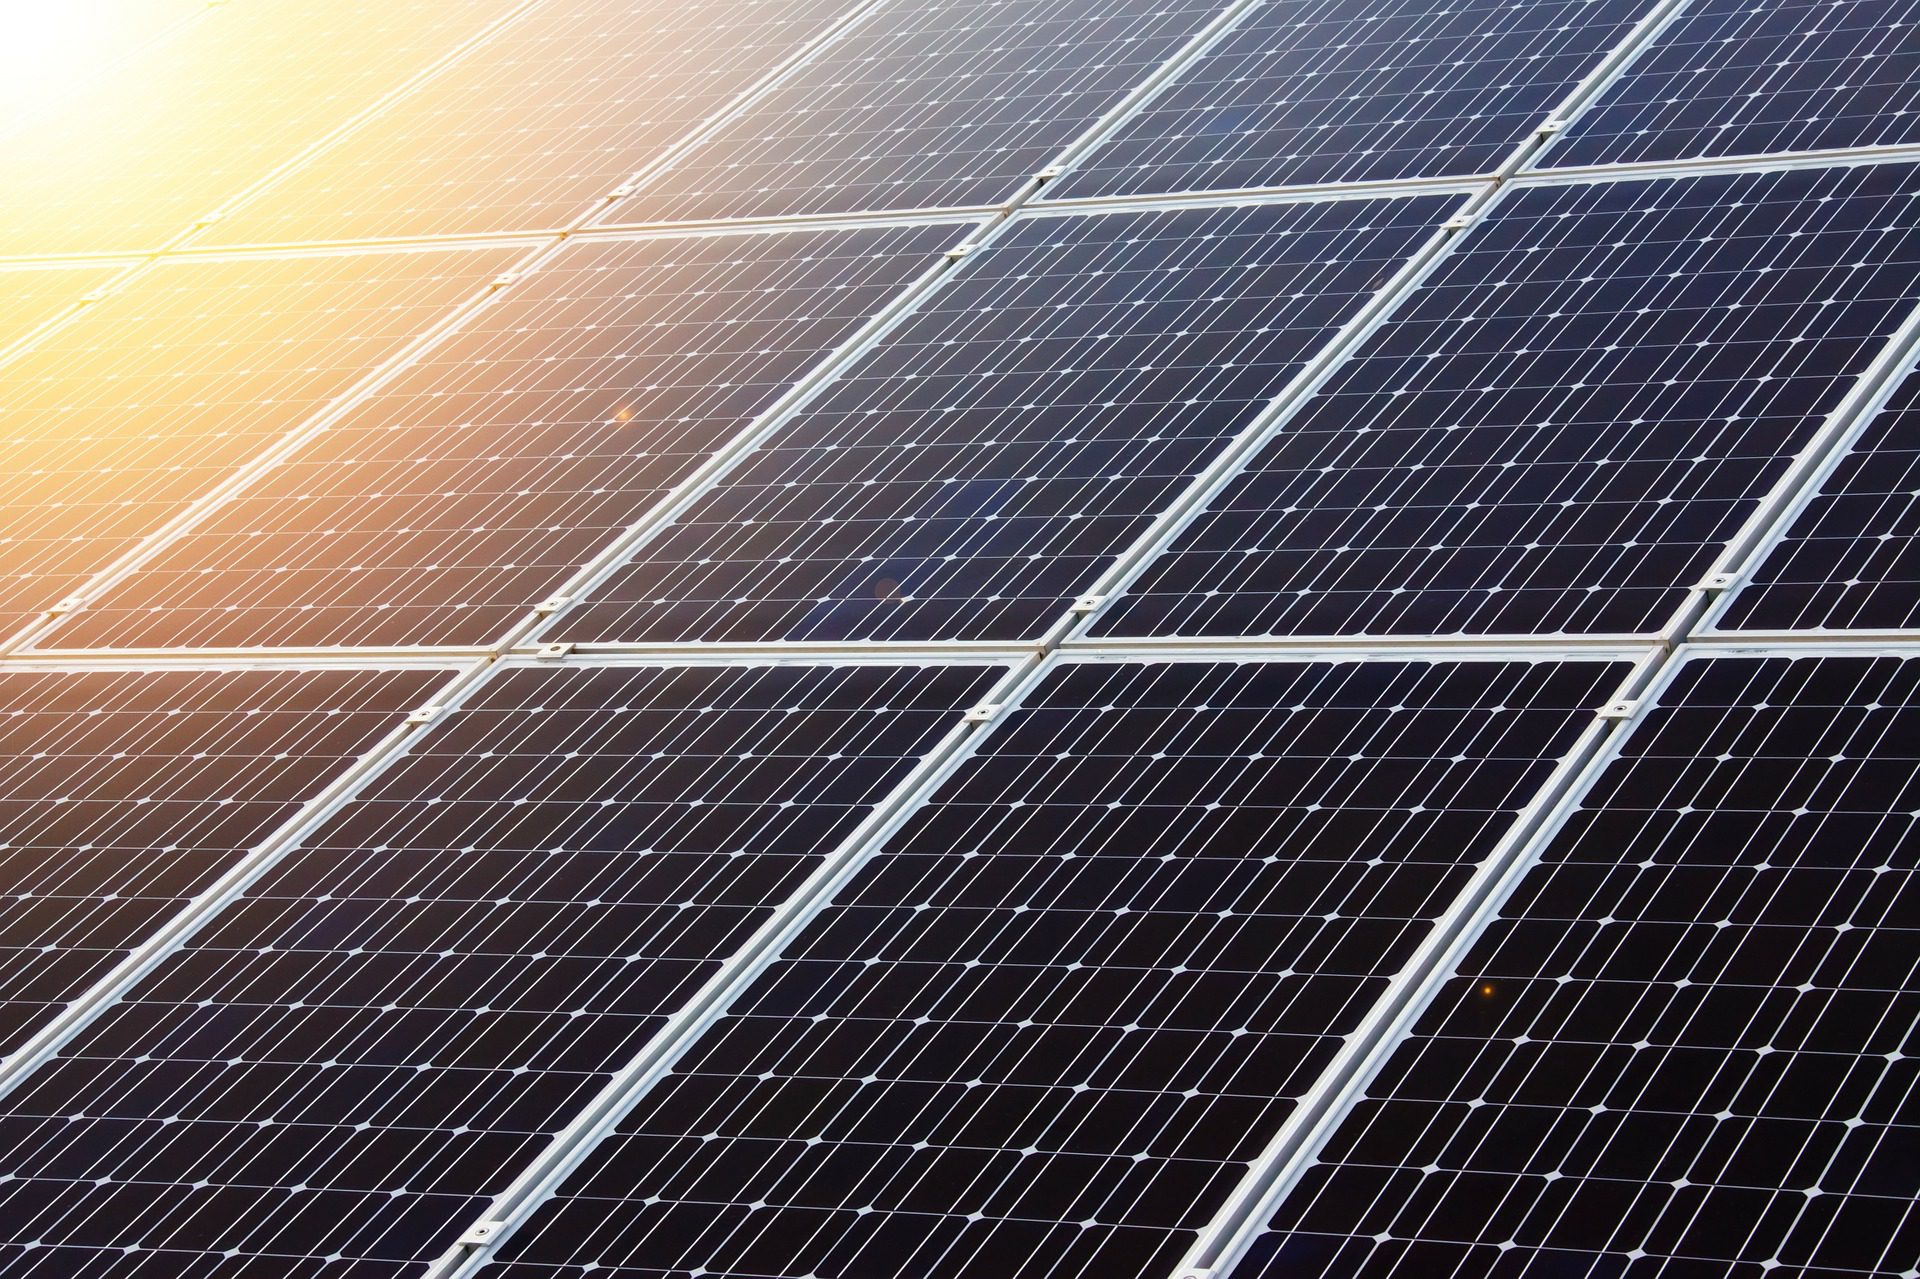 solar panel myths